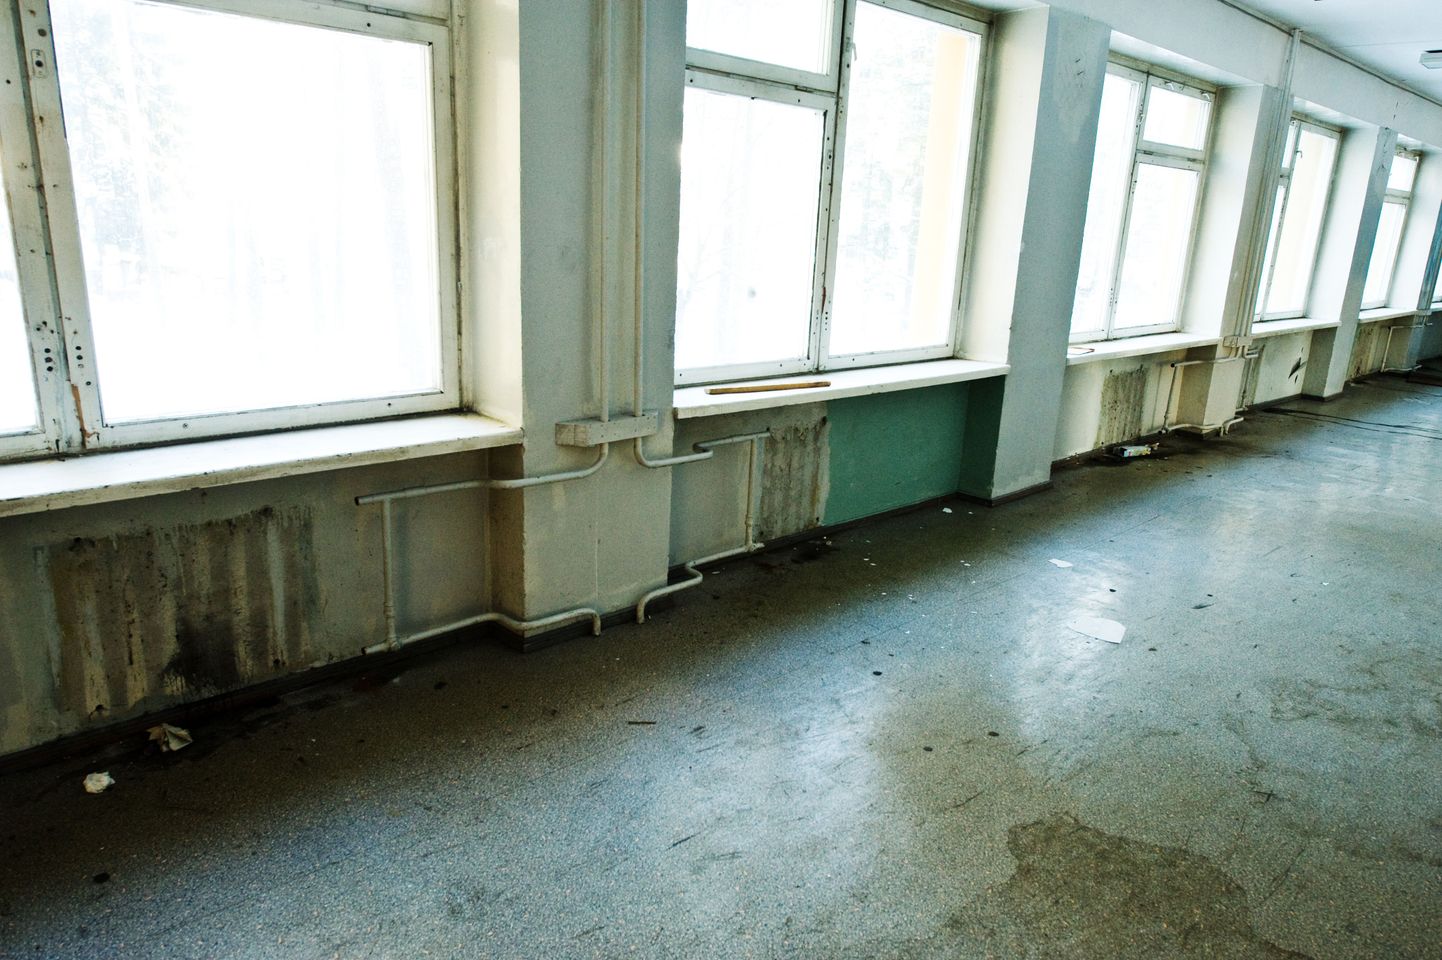 Valdeku tänaval asuva endise vene kooli klassiruum, kust on eemaldatud keskkütteradiaatorid.